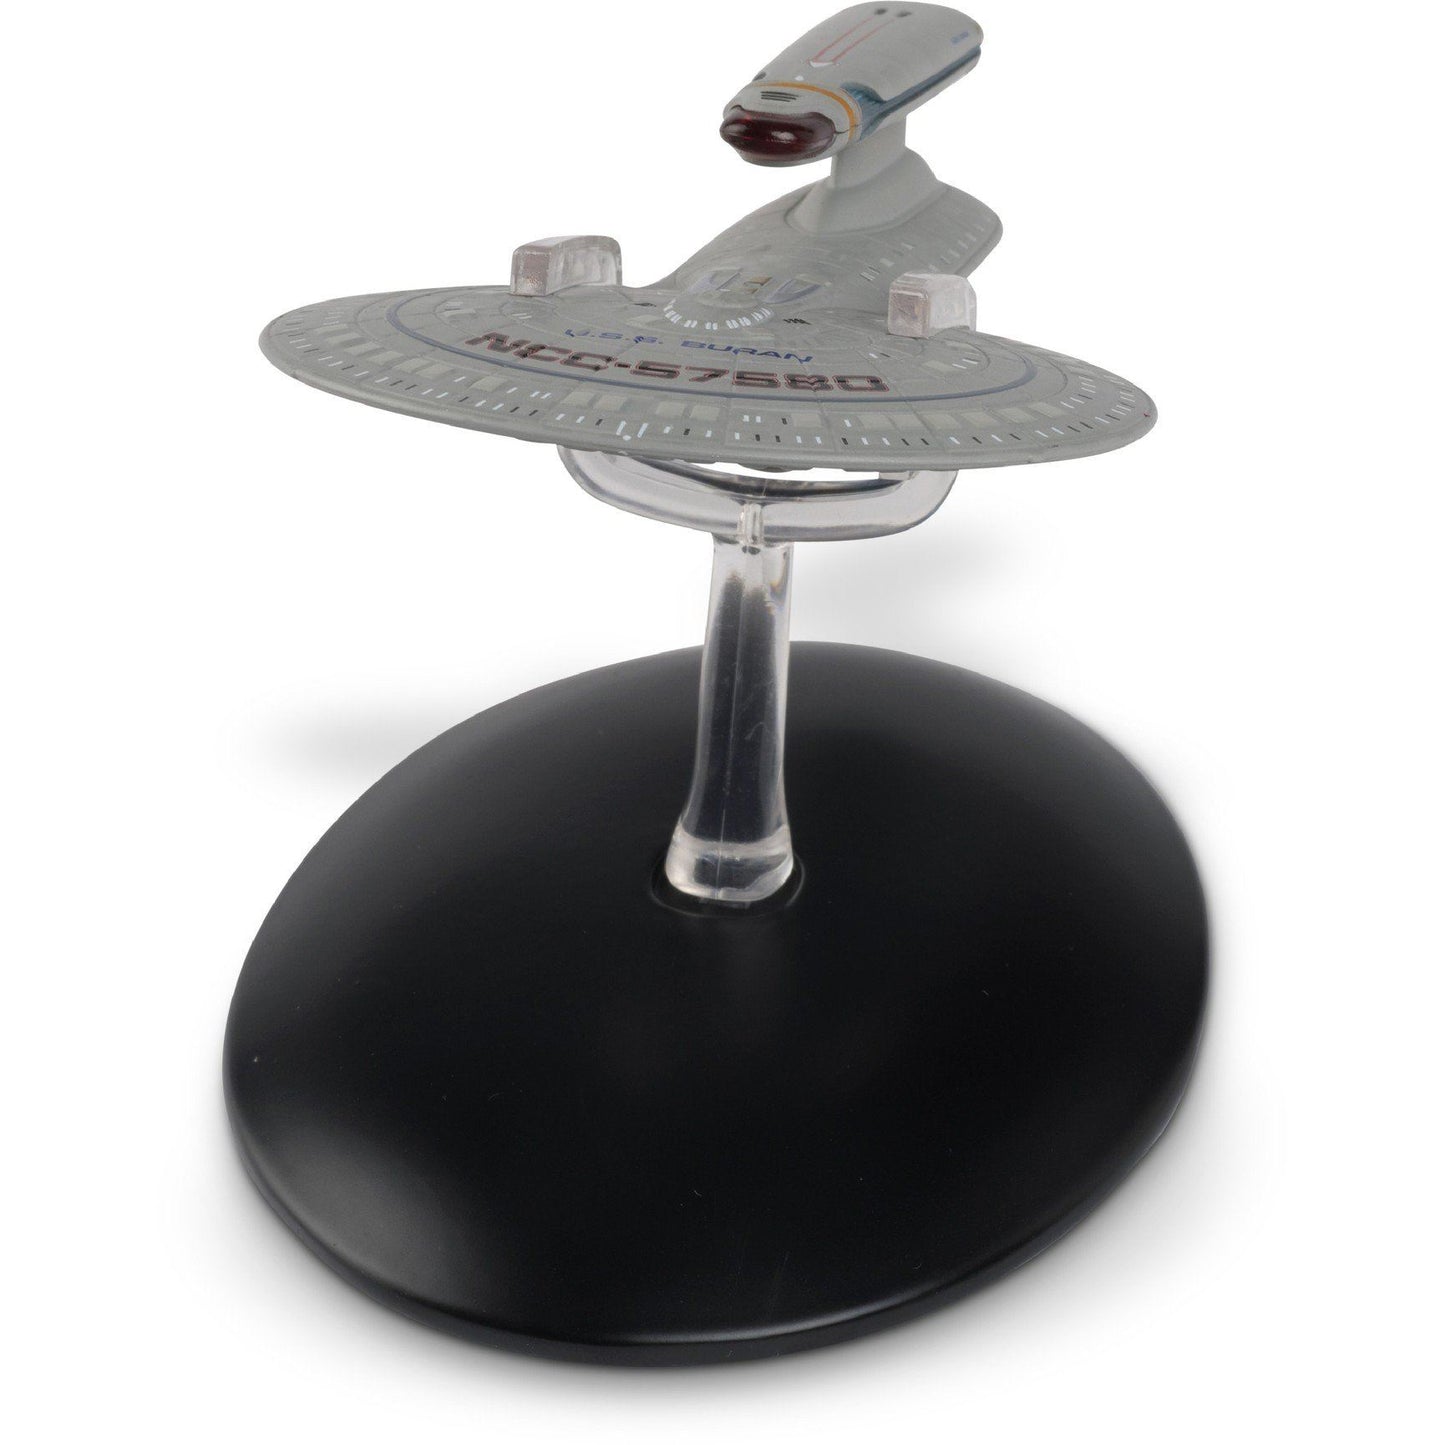 #114 Challenger Class Starship Model Die Cast Ship (Star Trek)